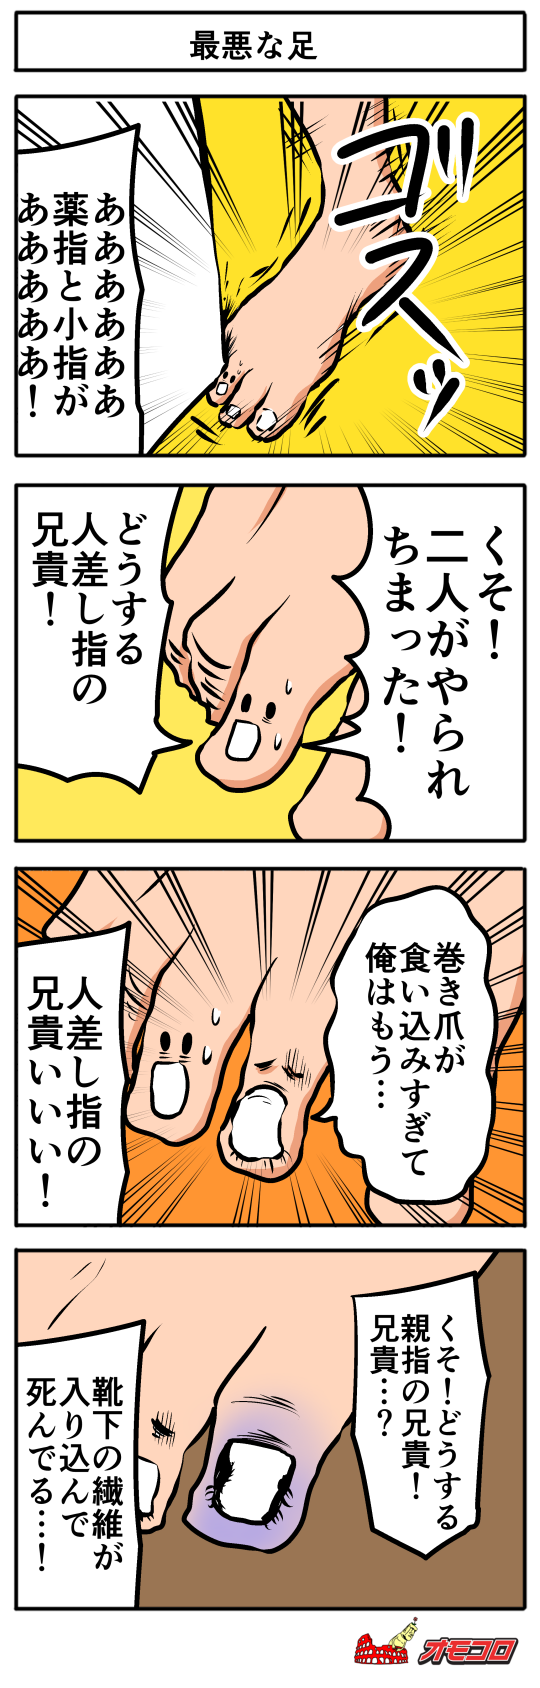 【4コマ漫画】最悪な足